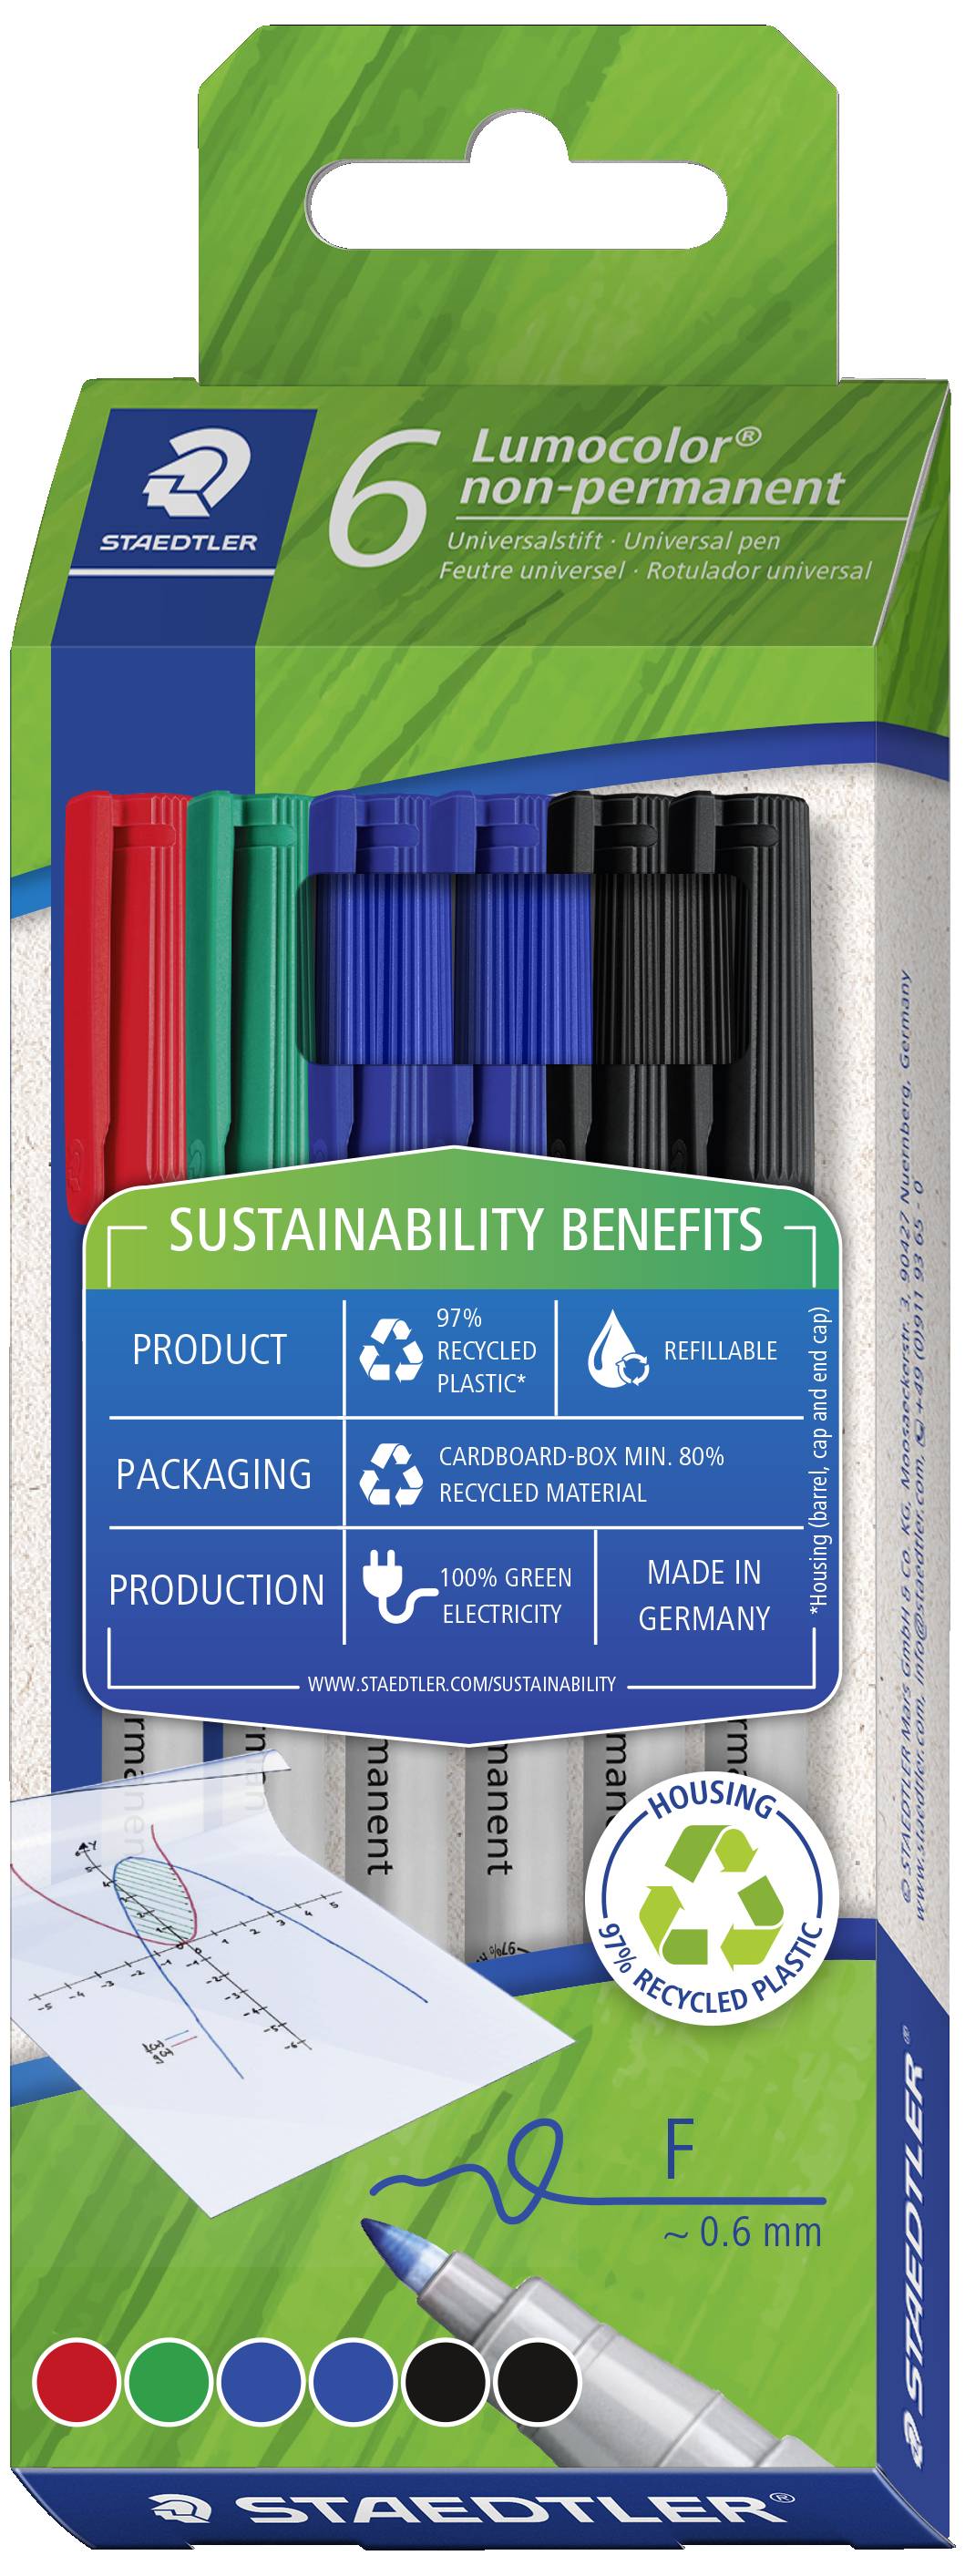 STAEDTLER Lumocolor NonPermanent-Marker 316F, 6er Etui Gehäuse aus 97% recyceltem Plastik gemäß ISO